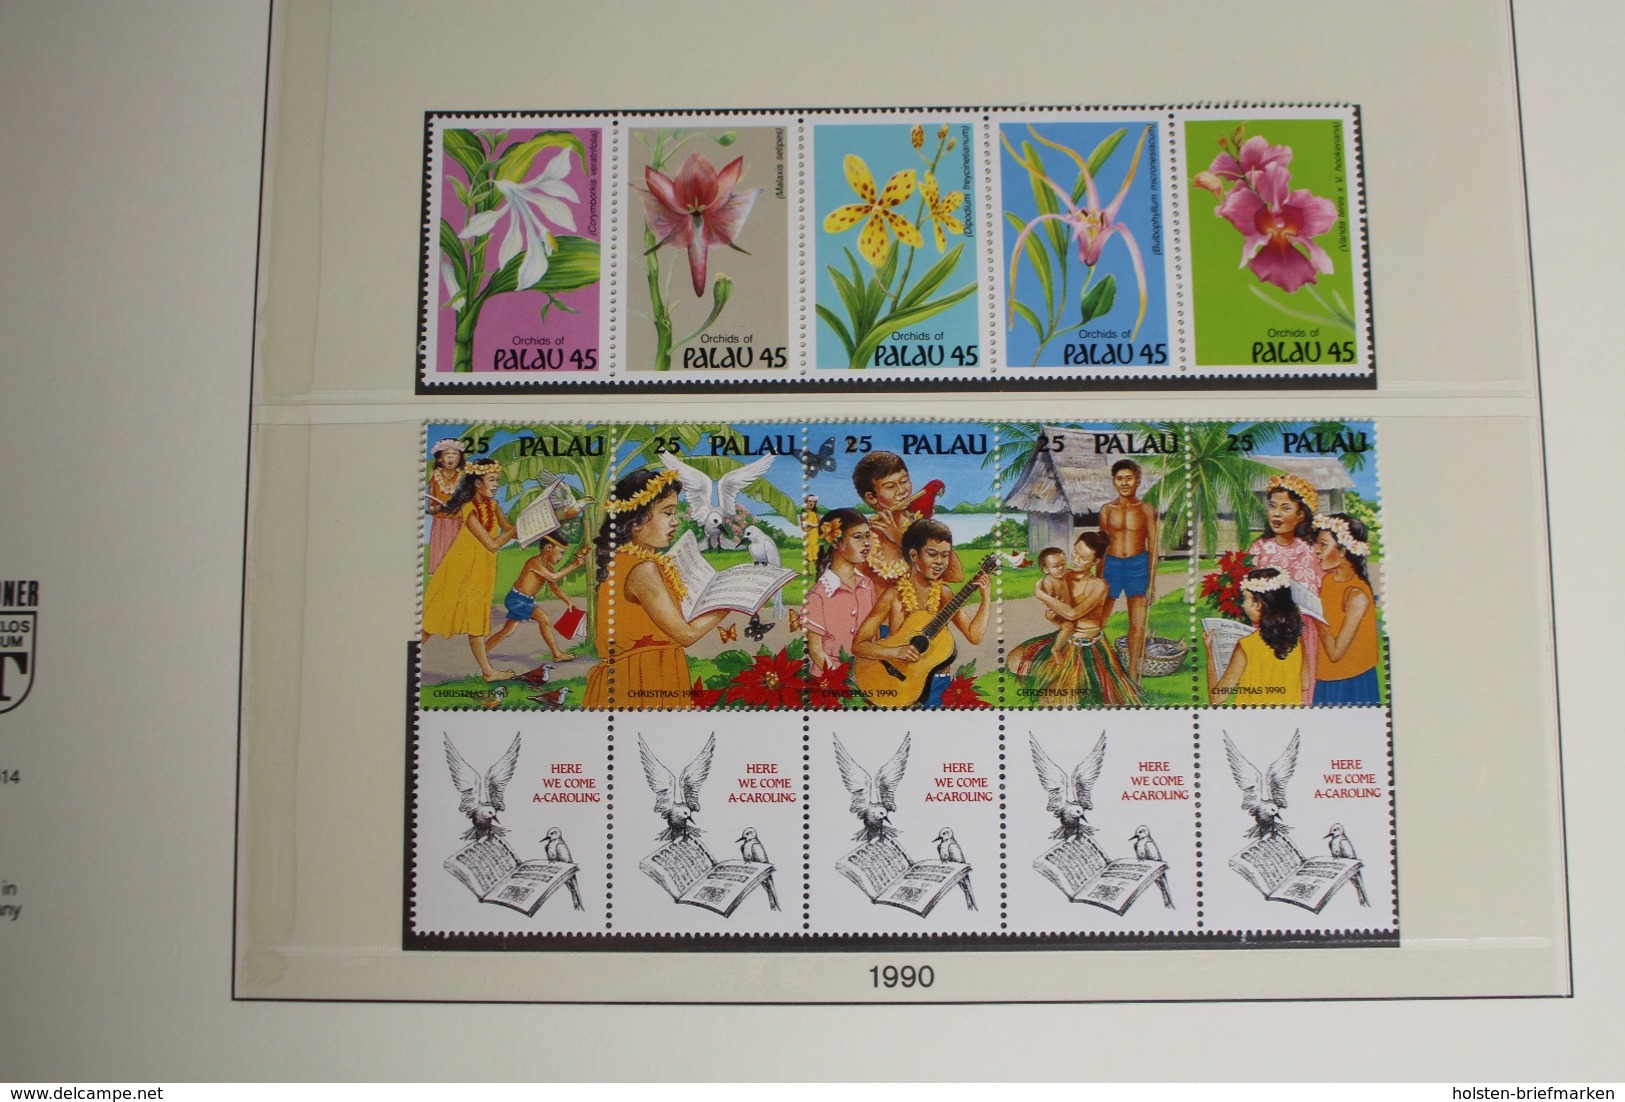 Palau 1983-1991, postfrische Sammlung im Lindner Vordruck